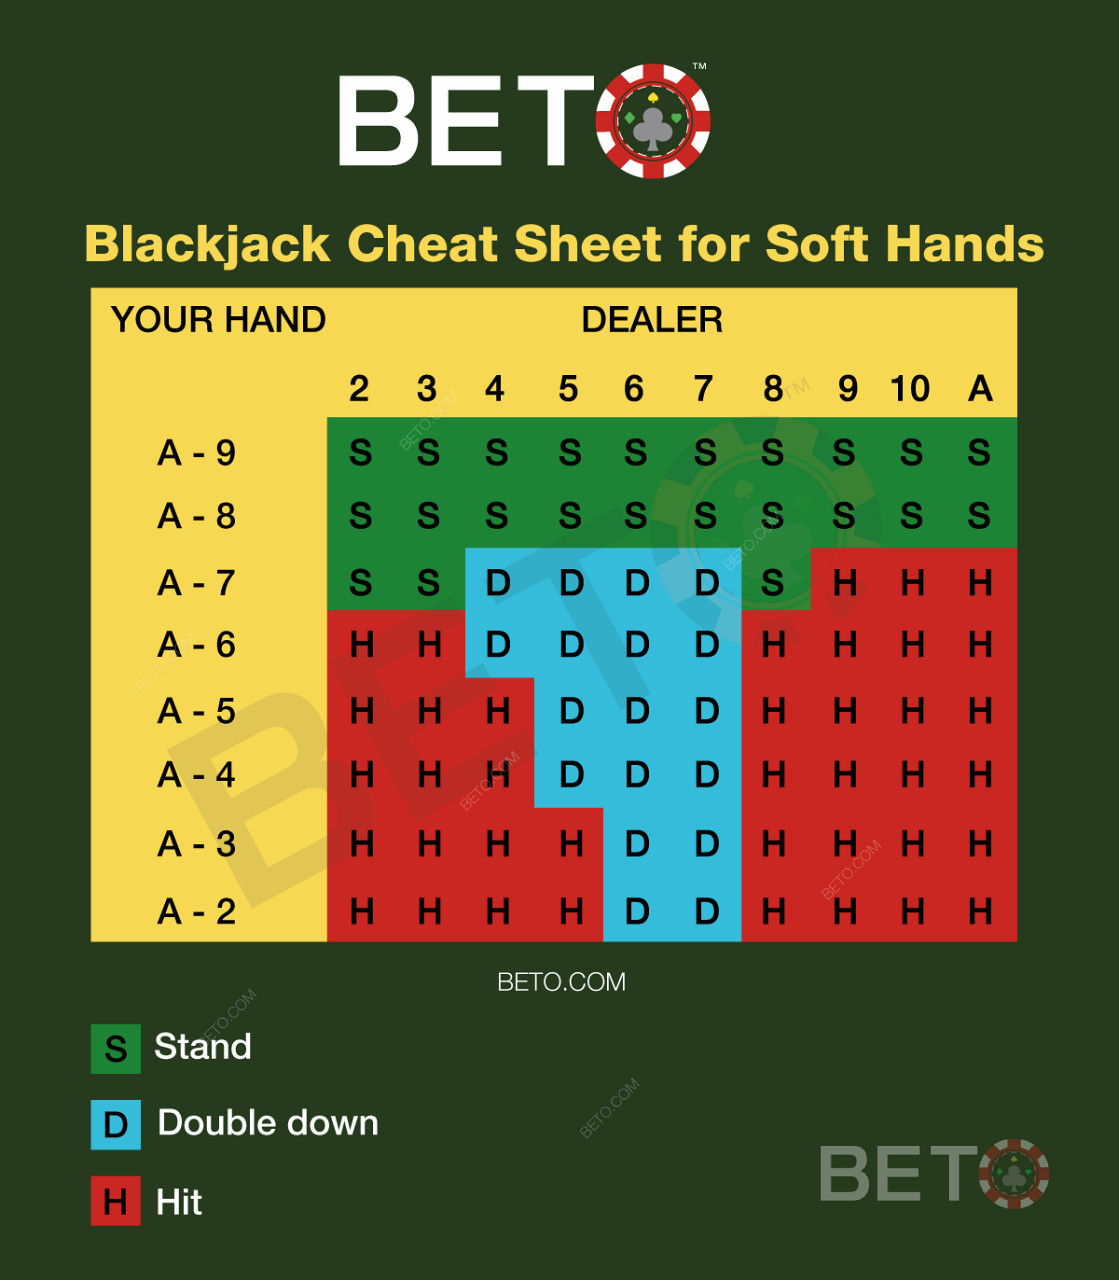 Wykres blackjacka dla miękkich rąk w blackjacku